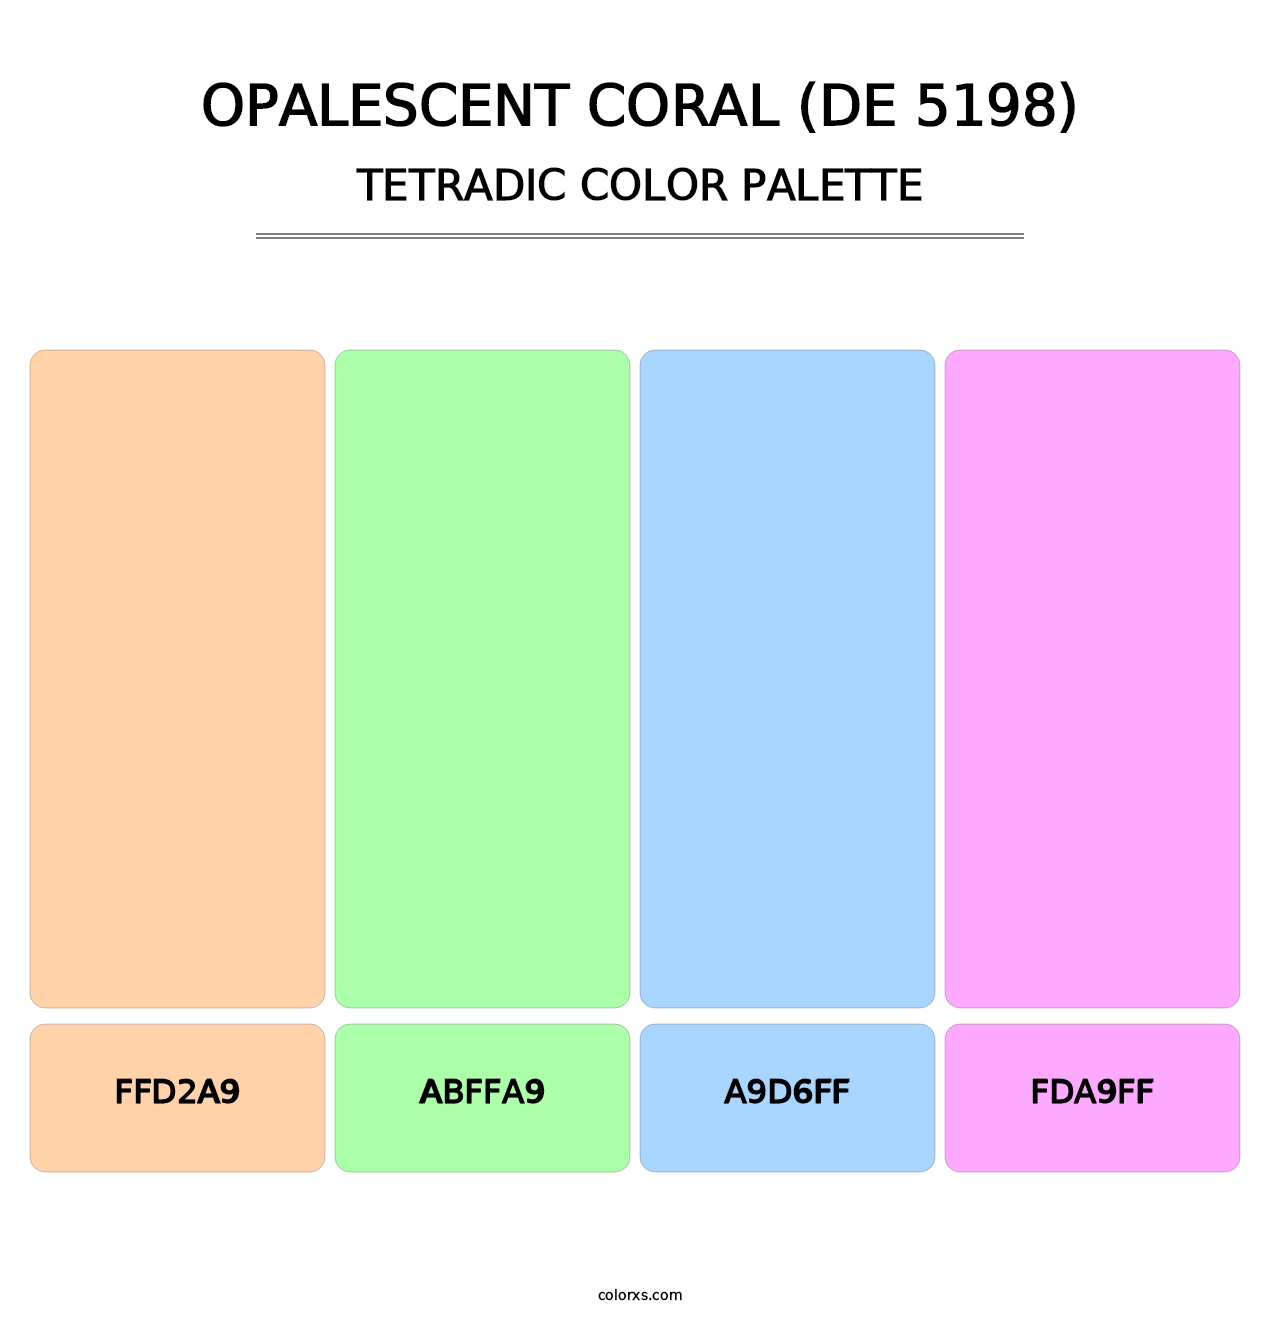 Opalescent Coral (DE 5198) - Tetradic Color Palette